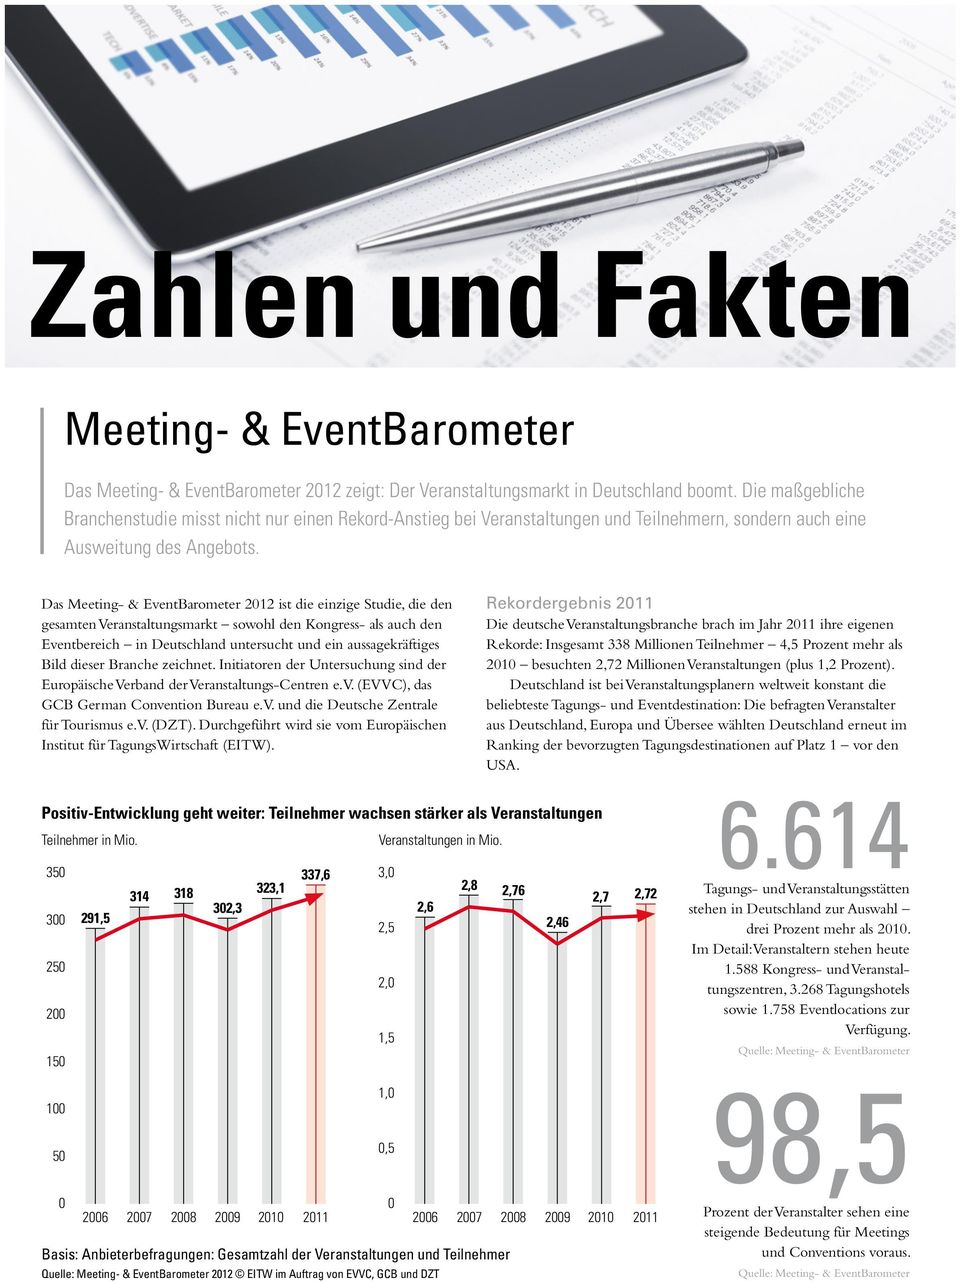 Das Meeting- & EventBarometer 2012 ist die einzige Studie, die den gesamten Veranstaltungsmarkt sowohl den Kongress- als auch den Eventbereich in Deutschland untersucht und ein aussagekräftiges Bild